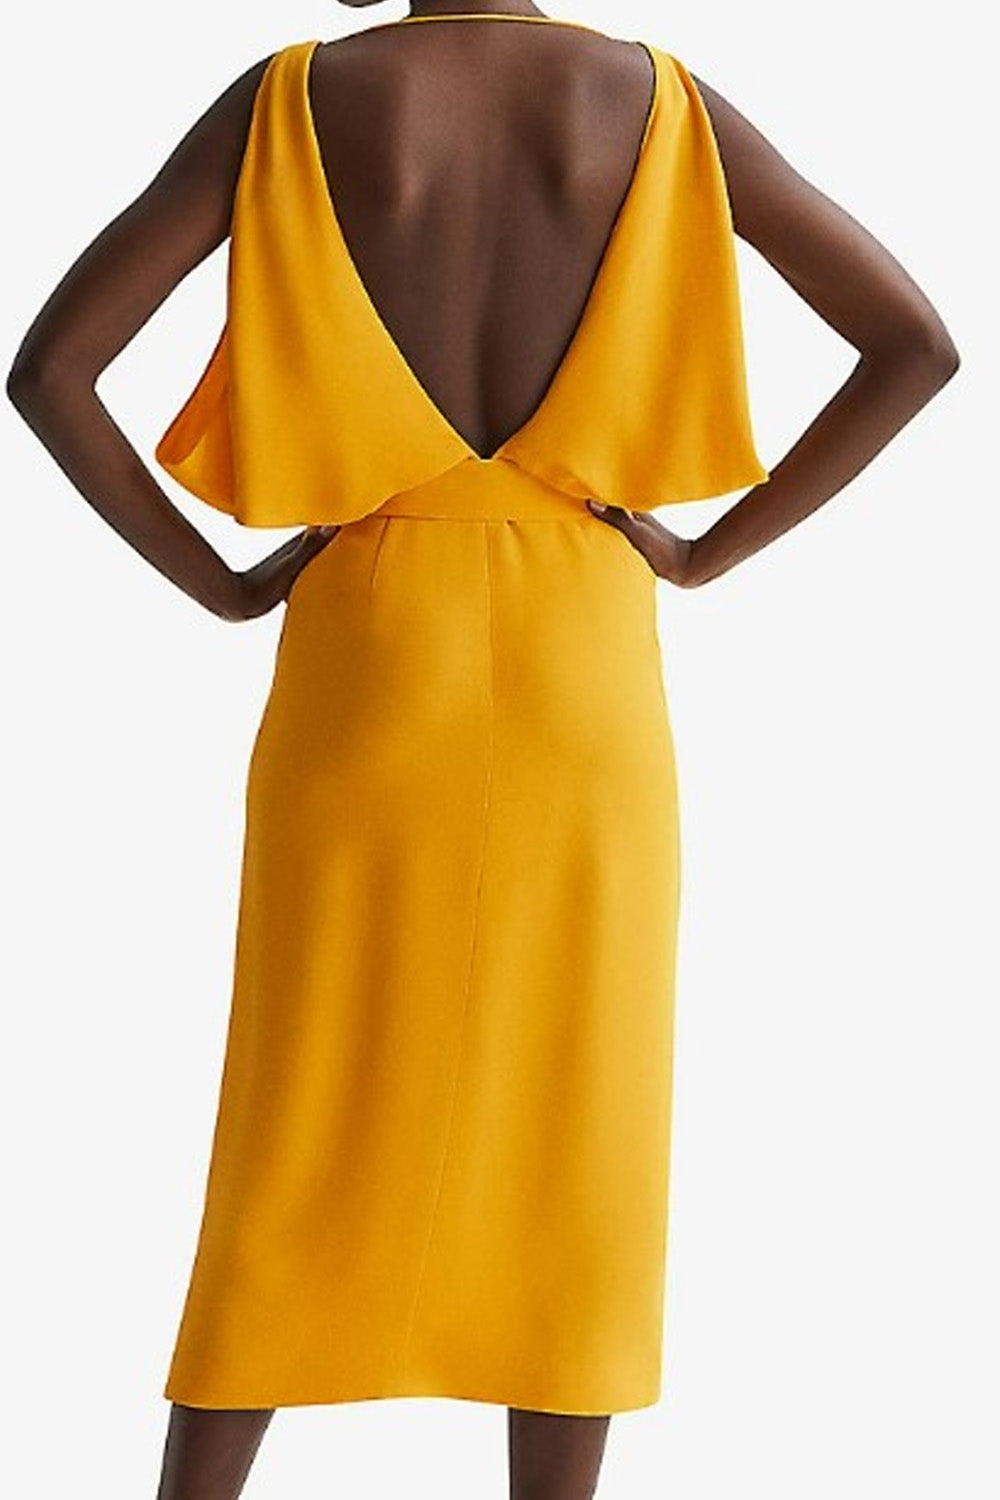 Bucolic yellow Dress